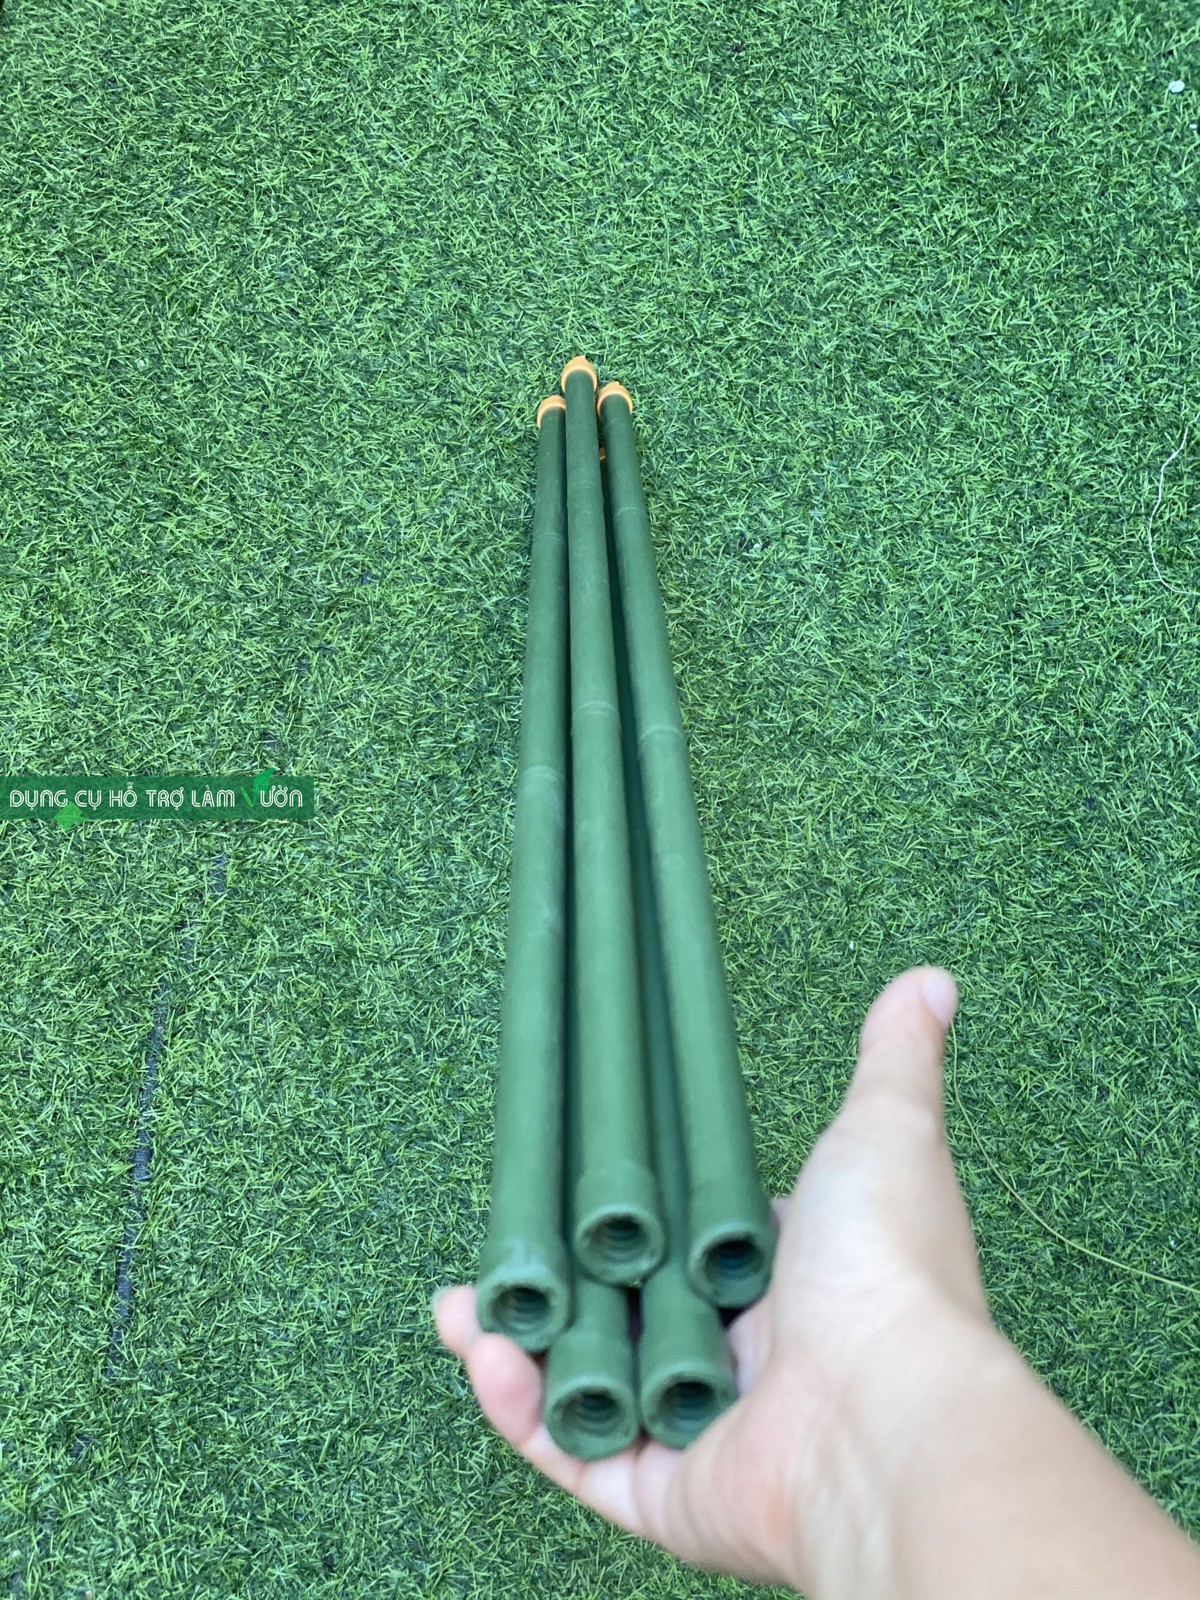 5 ống thép bọc nhựa phi 16 dài 180cm có đầu nối màu cam nối dài ống với nhau